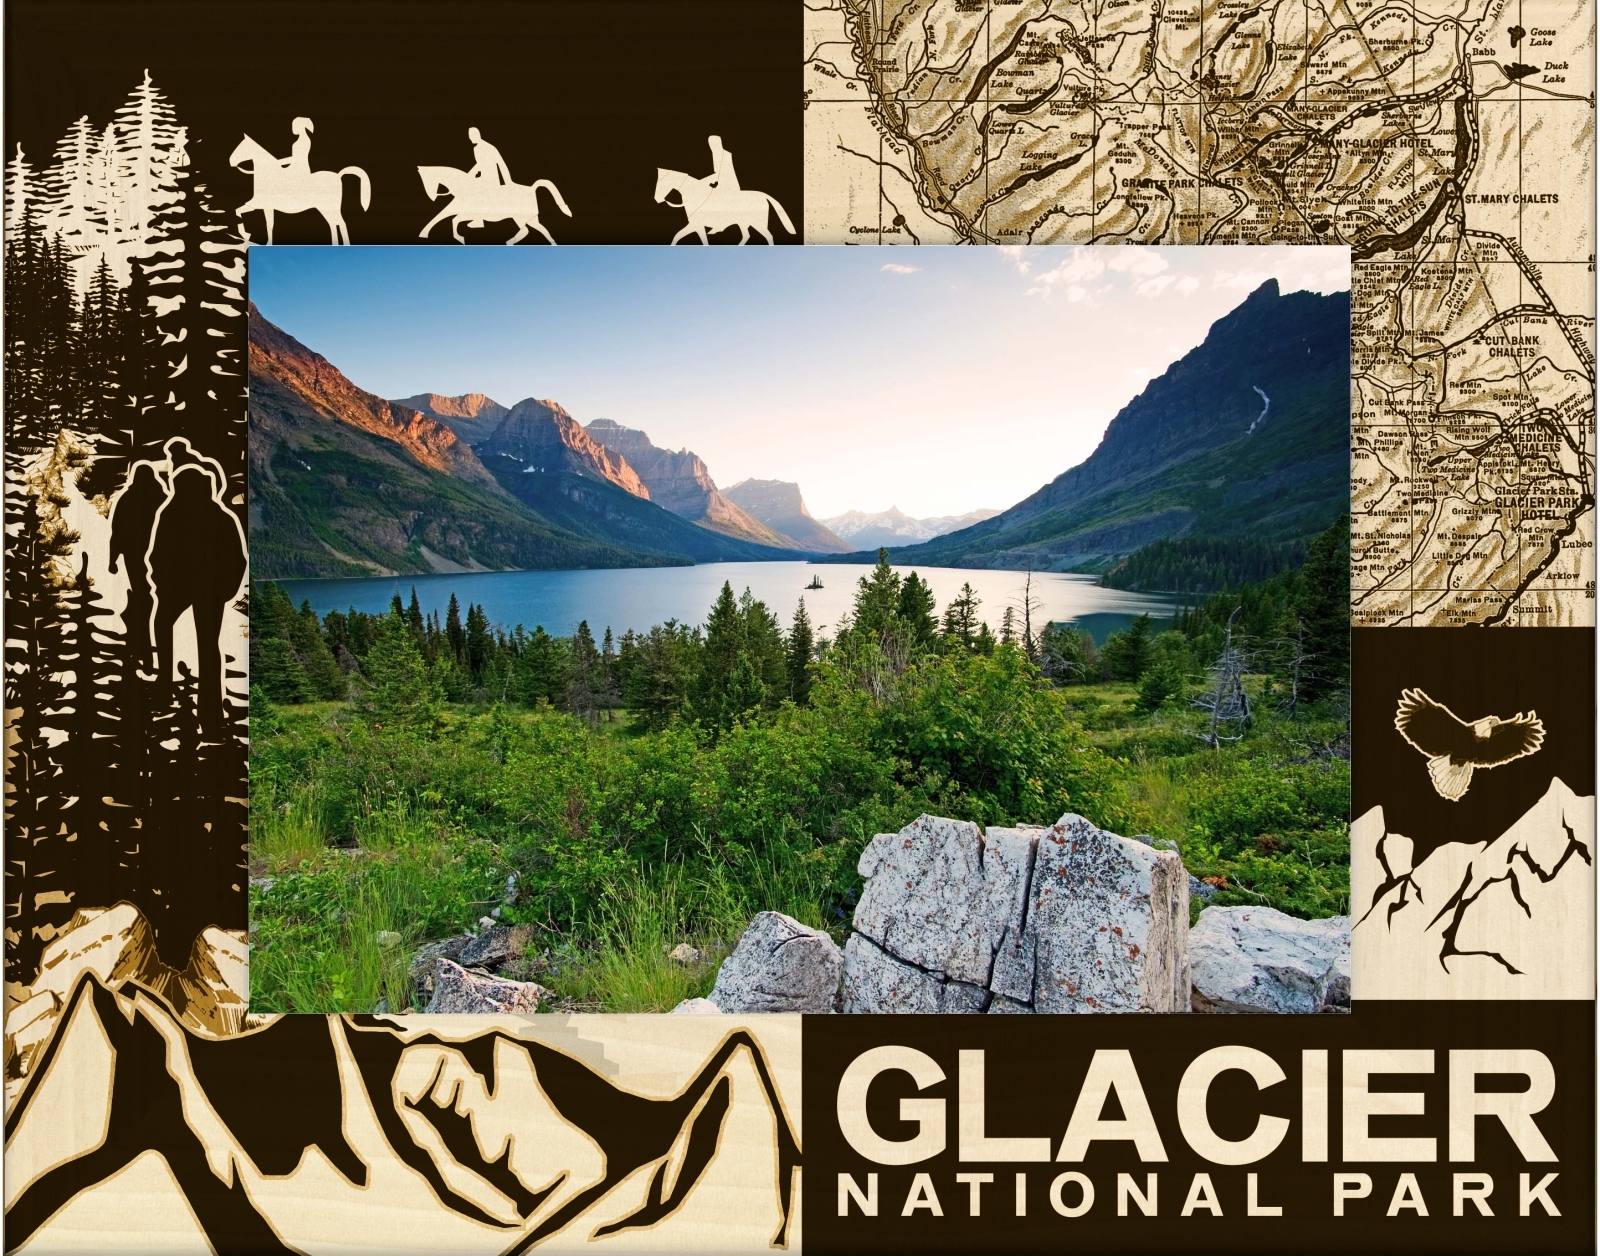 Primary image for Glacier National Park Laser Engraved Wood Picture Frame (5 x 7)